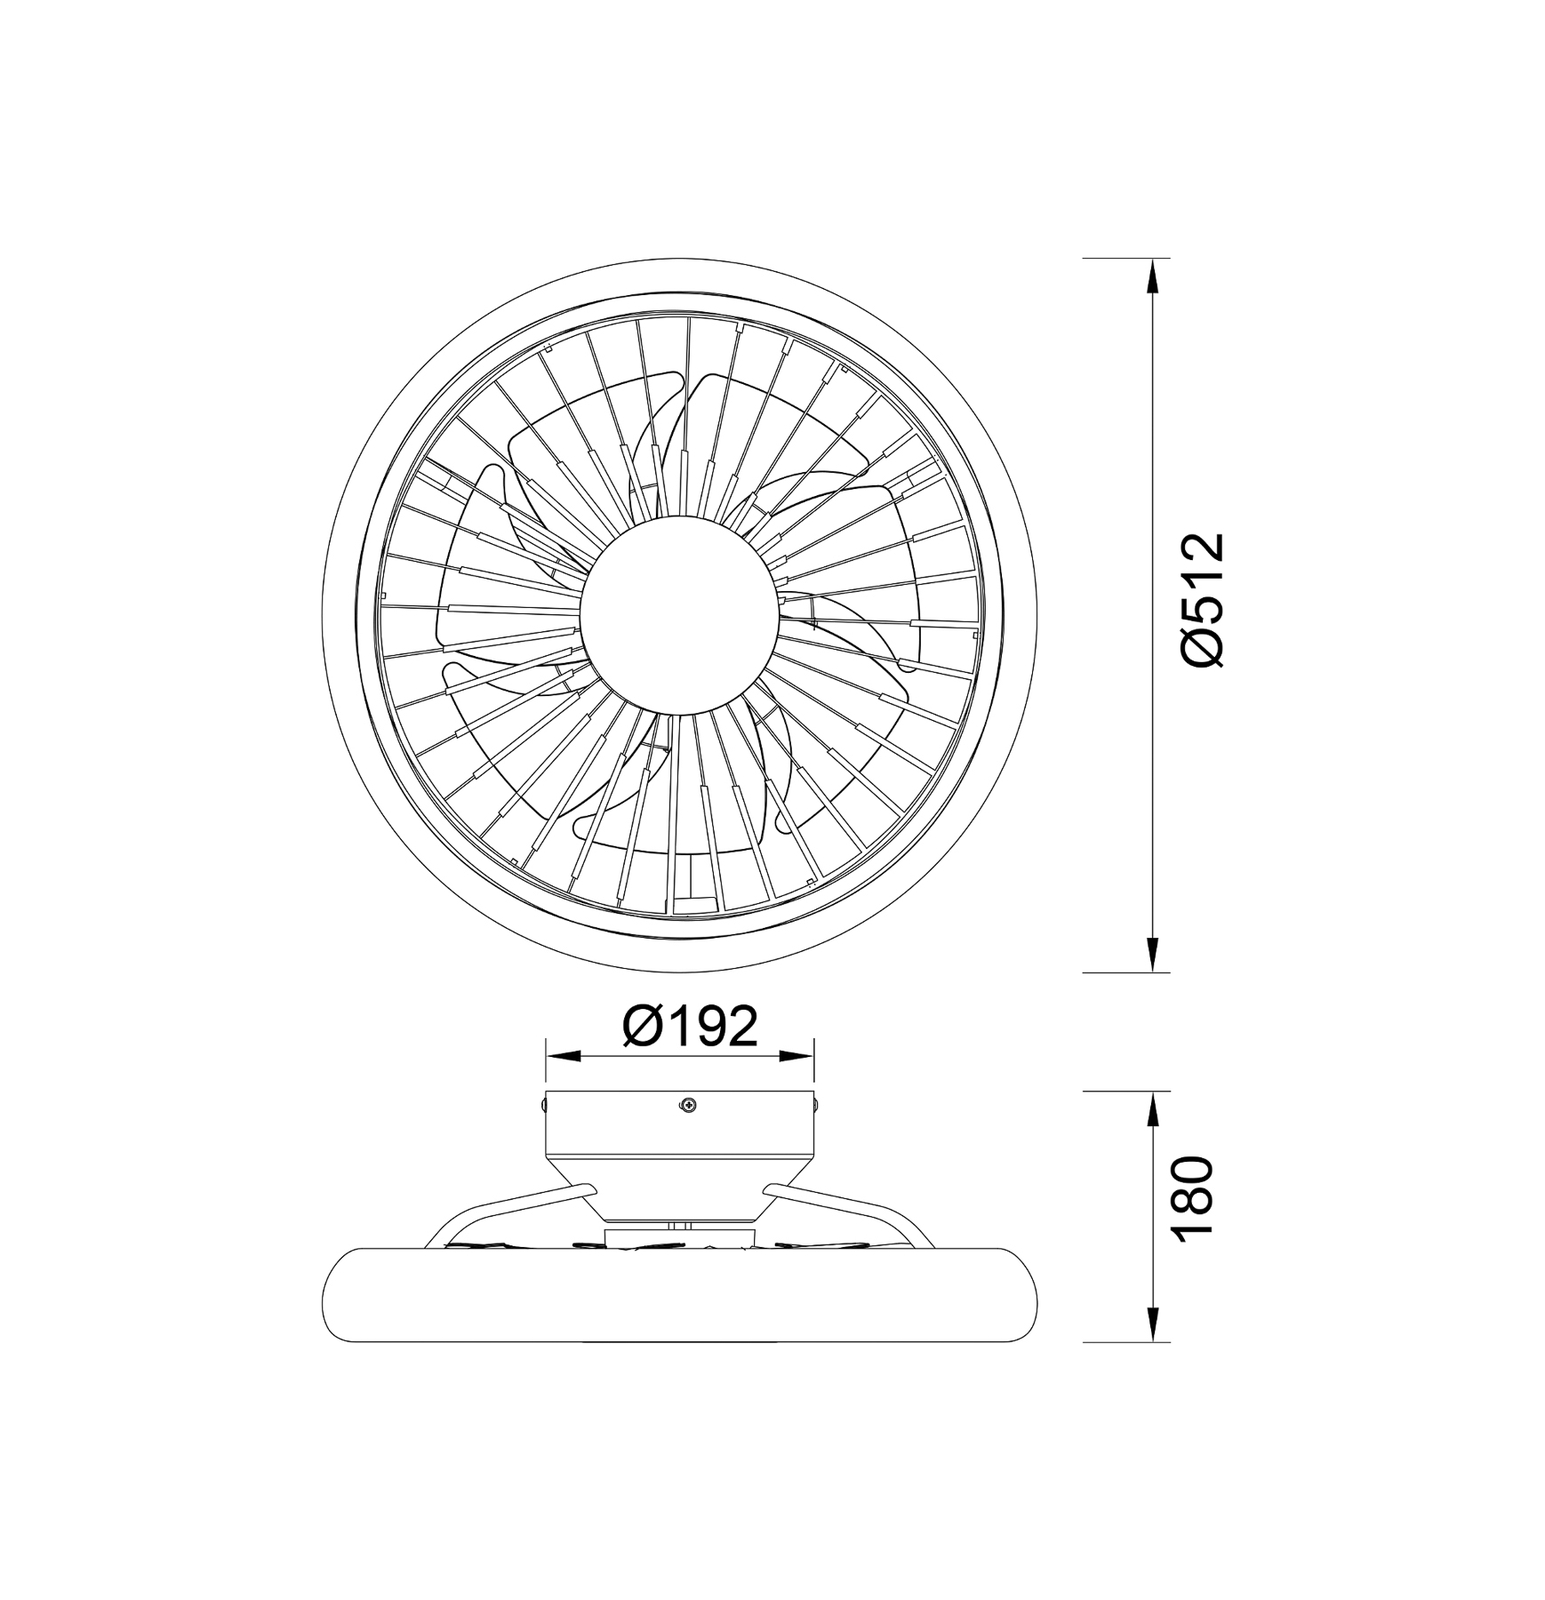 Ventilateur de plafond LED Turbo, blanc, DC silencieux Ø 51 cm CCT